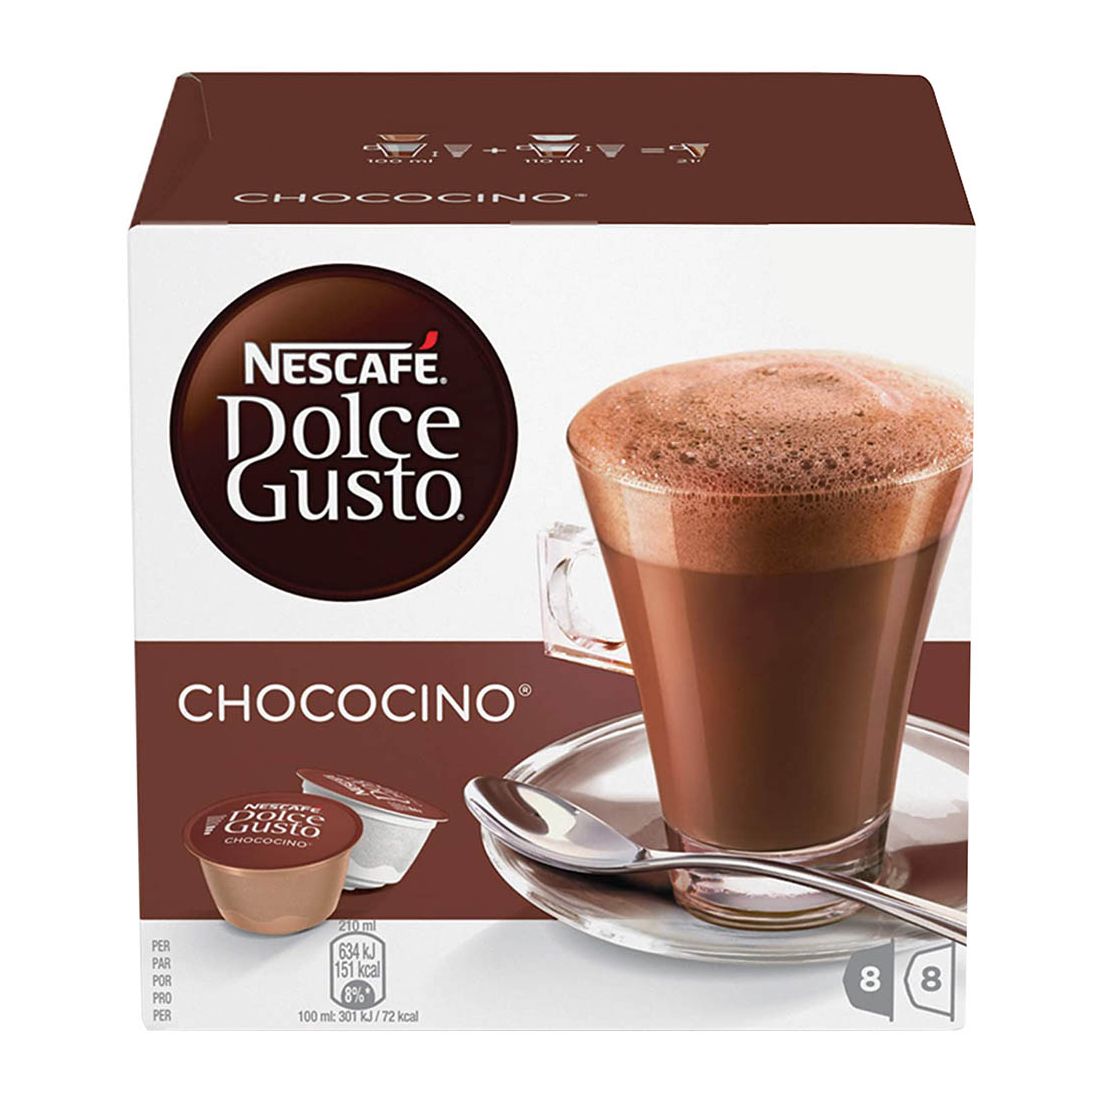 Nescafe Dolce Gusto Chococcino 16Cap